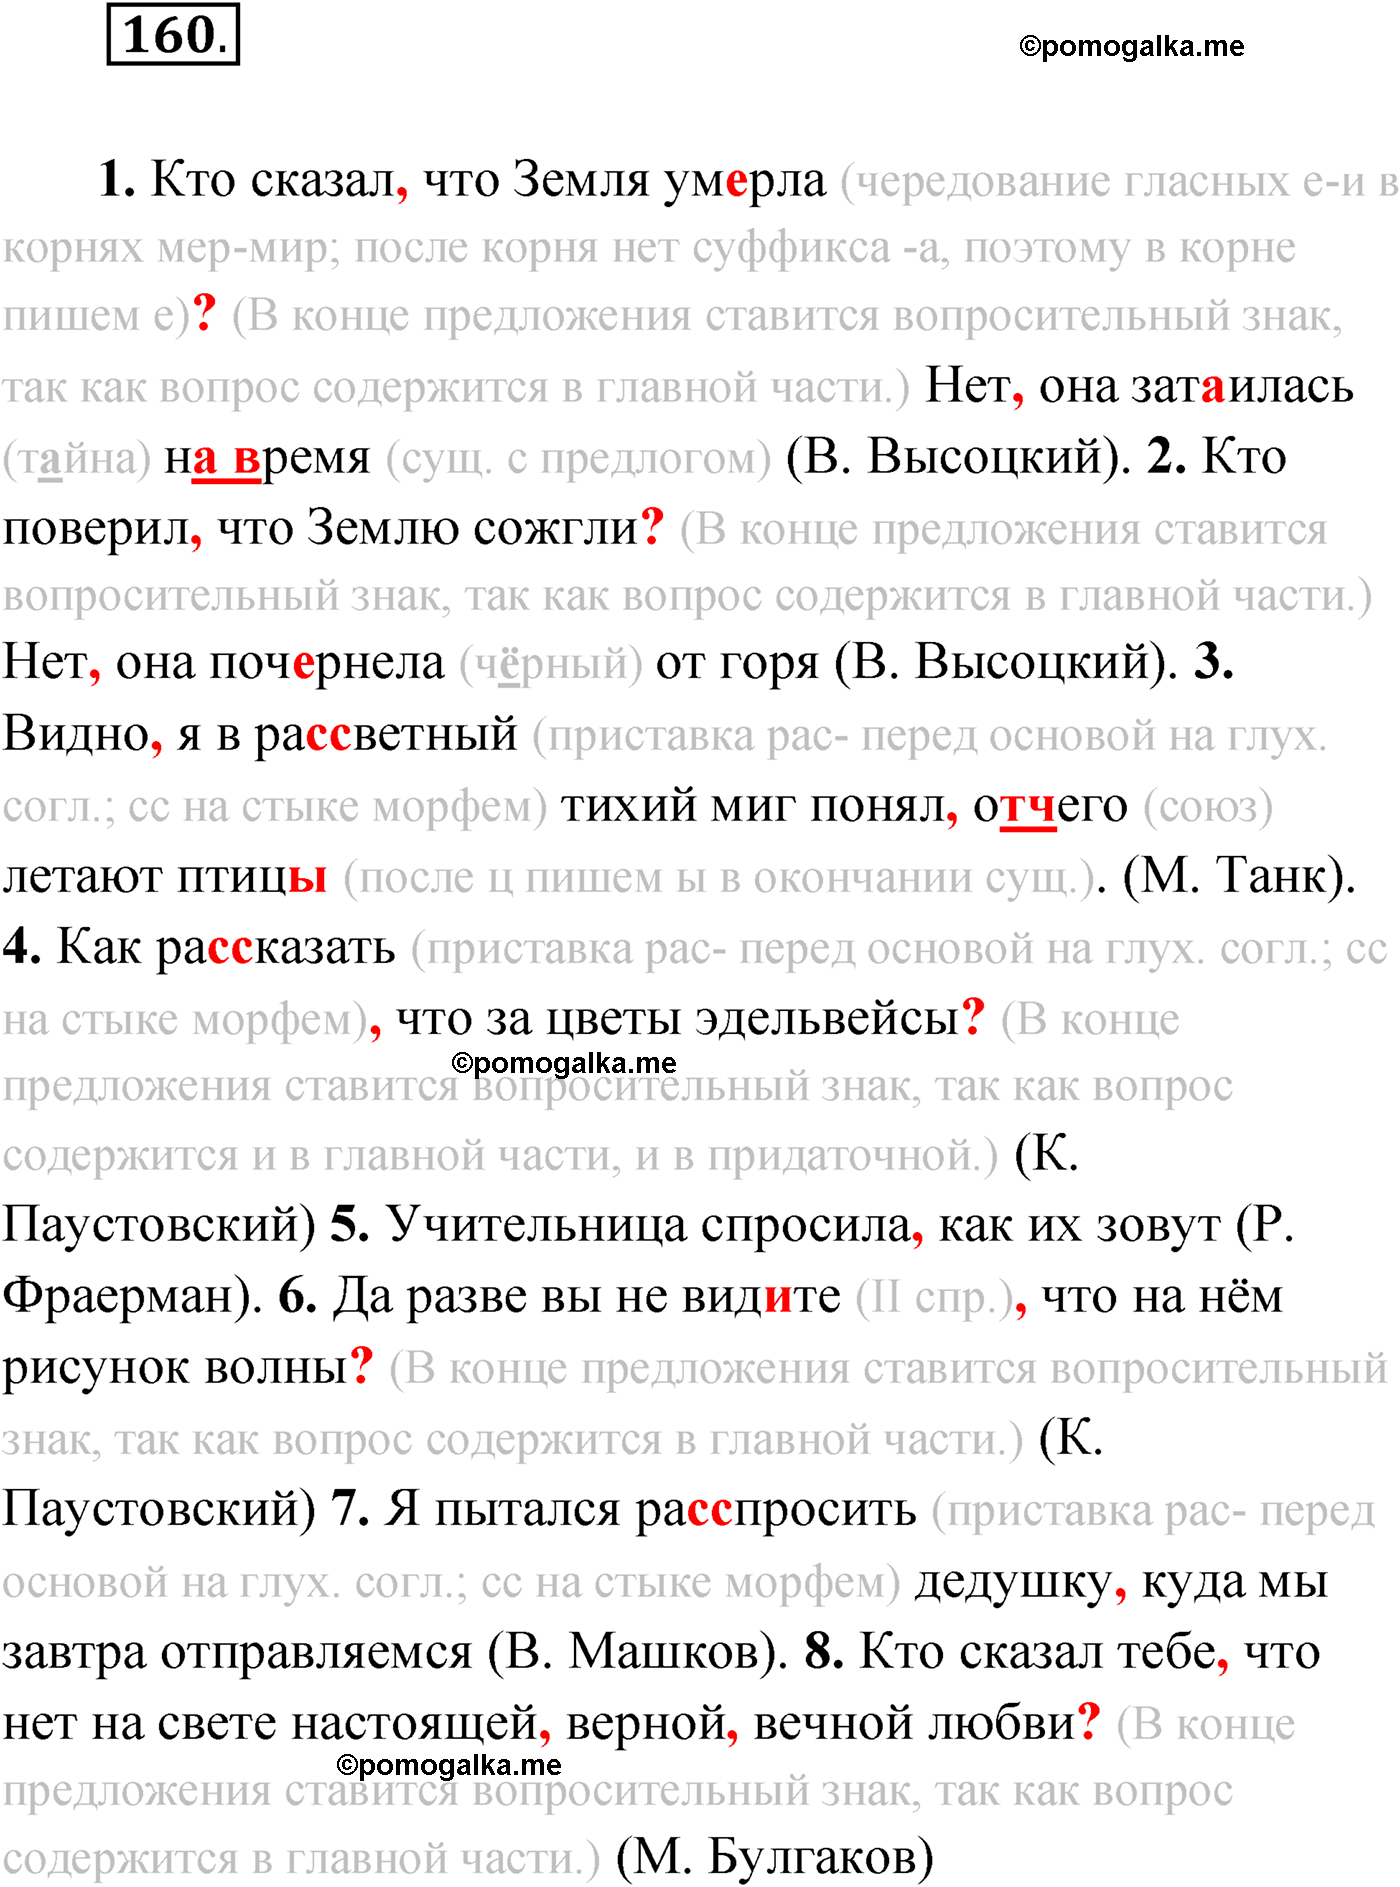 упражнение №160 русский язык 9 класс Мурина 2019 год